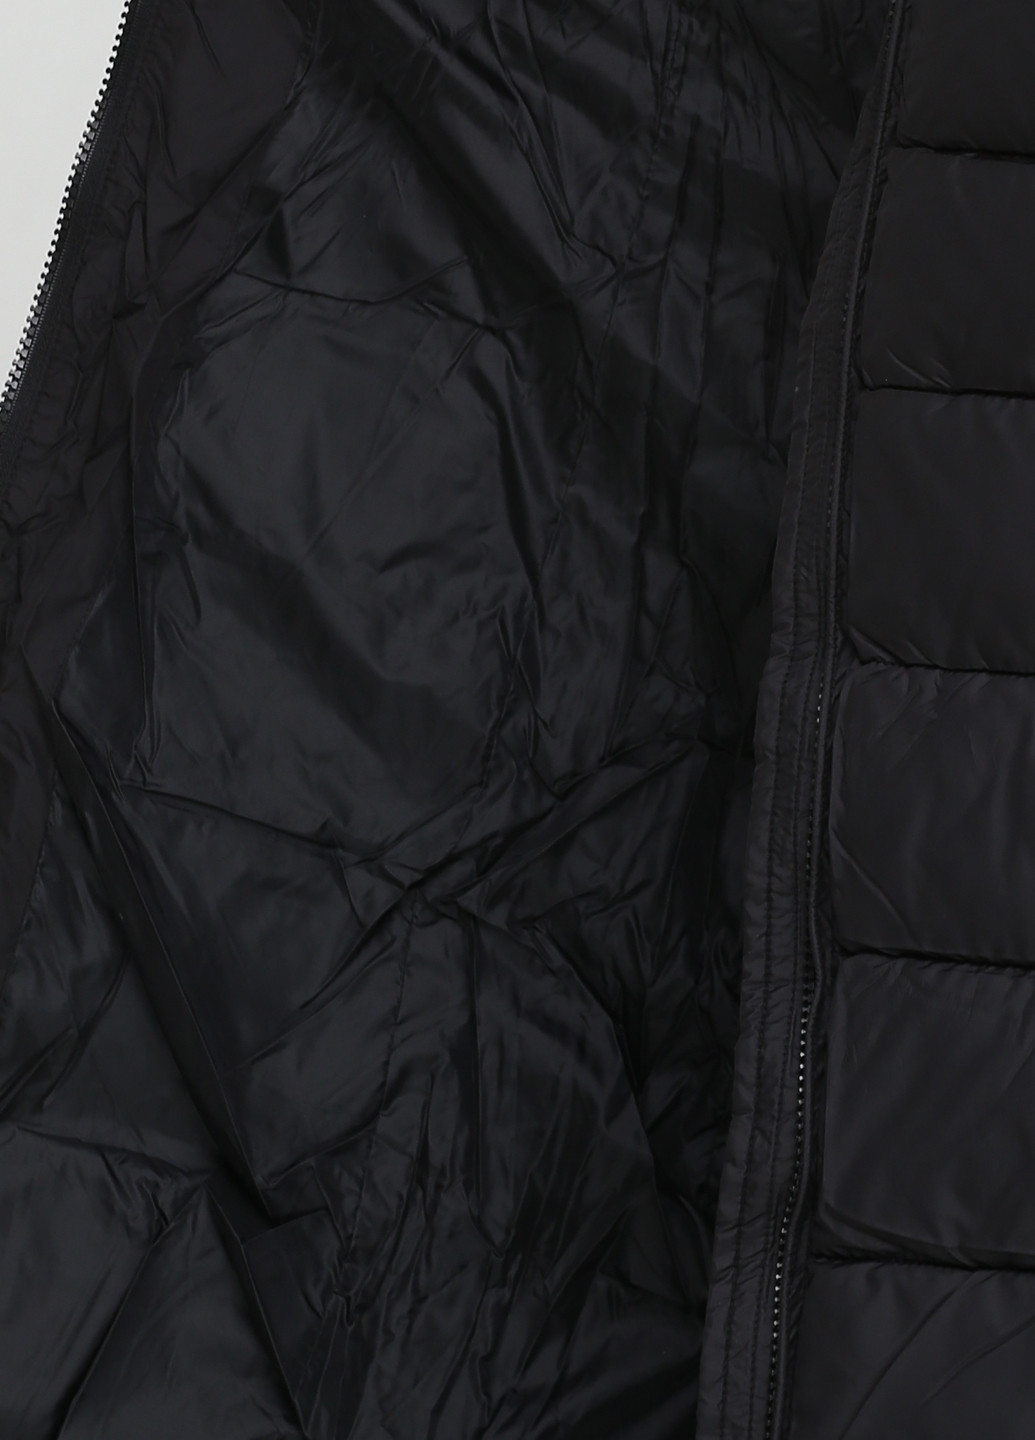 Черная зимняя куртка Monte Cervino